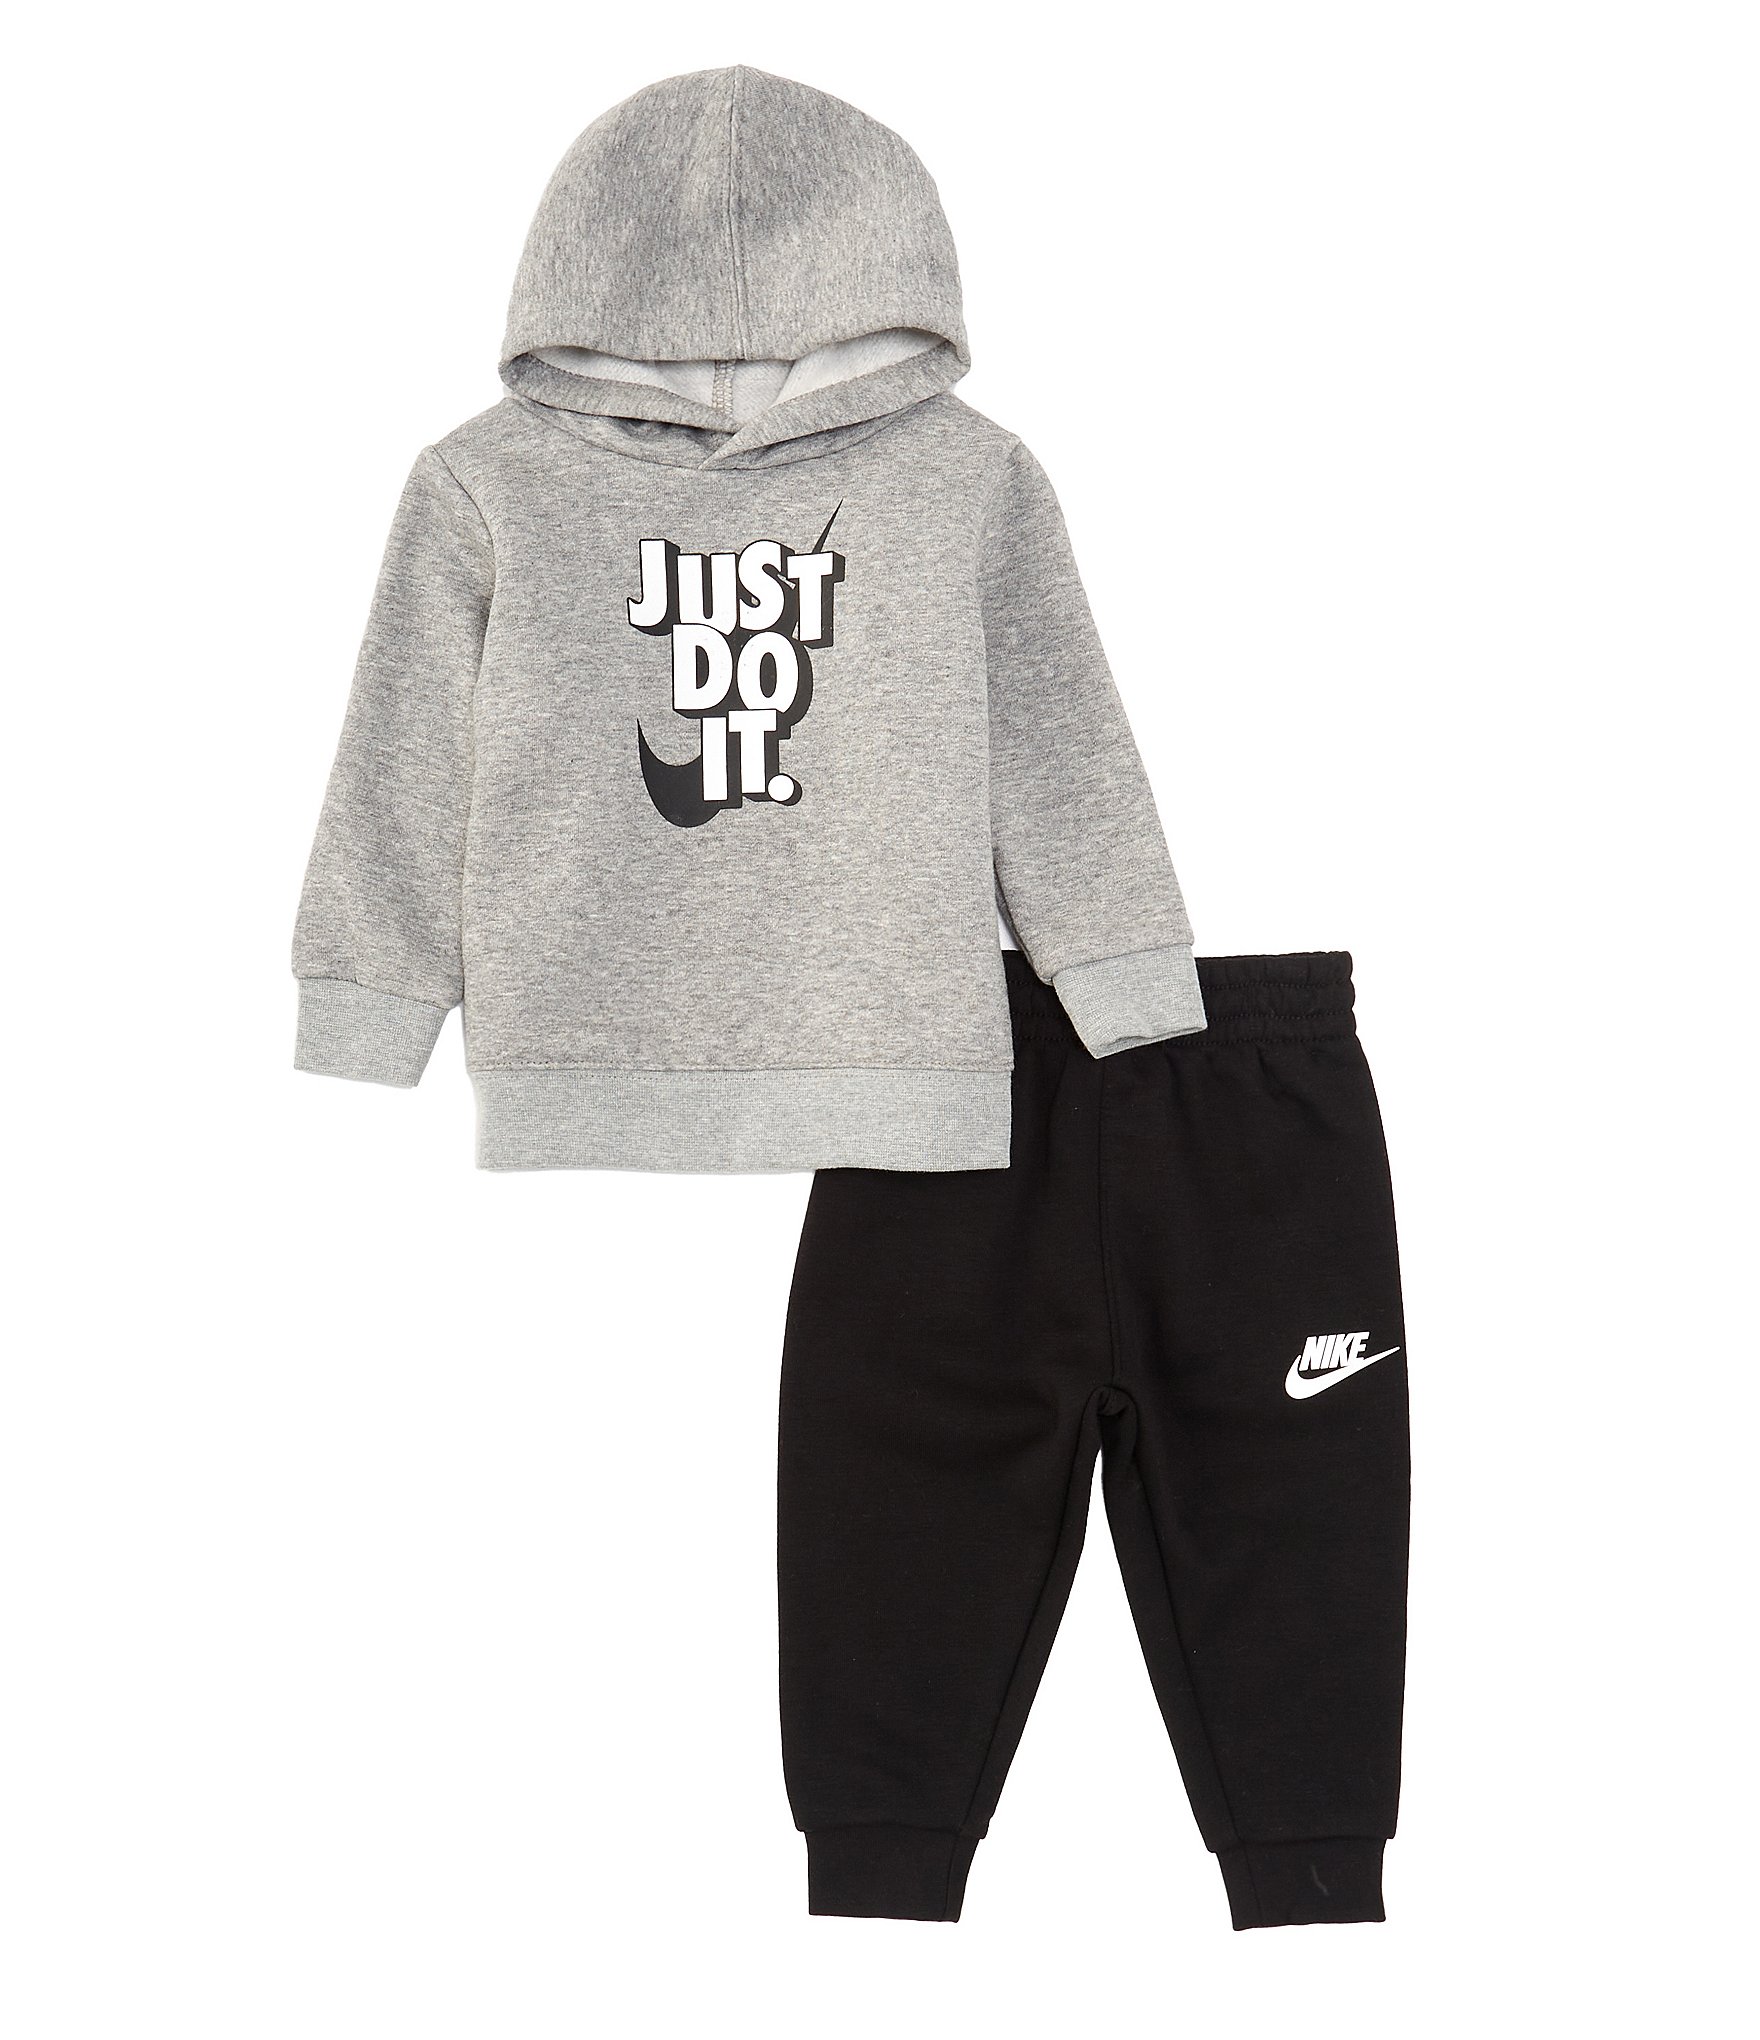 Nike - Jogger Set Baby